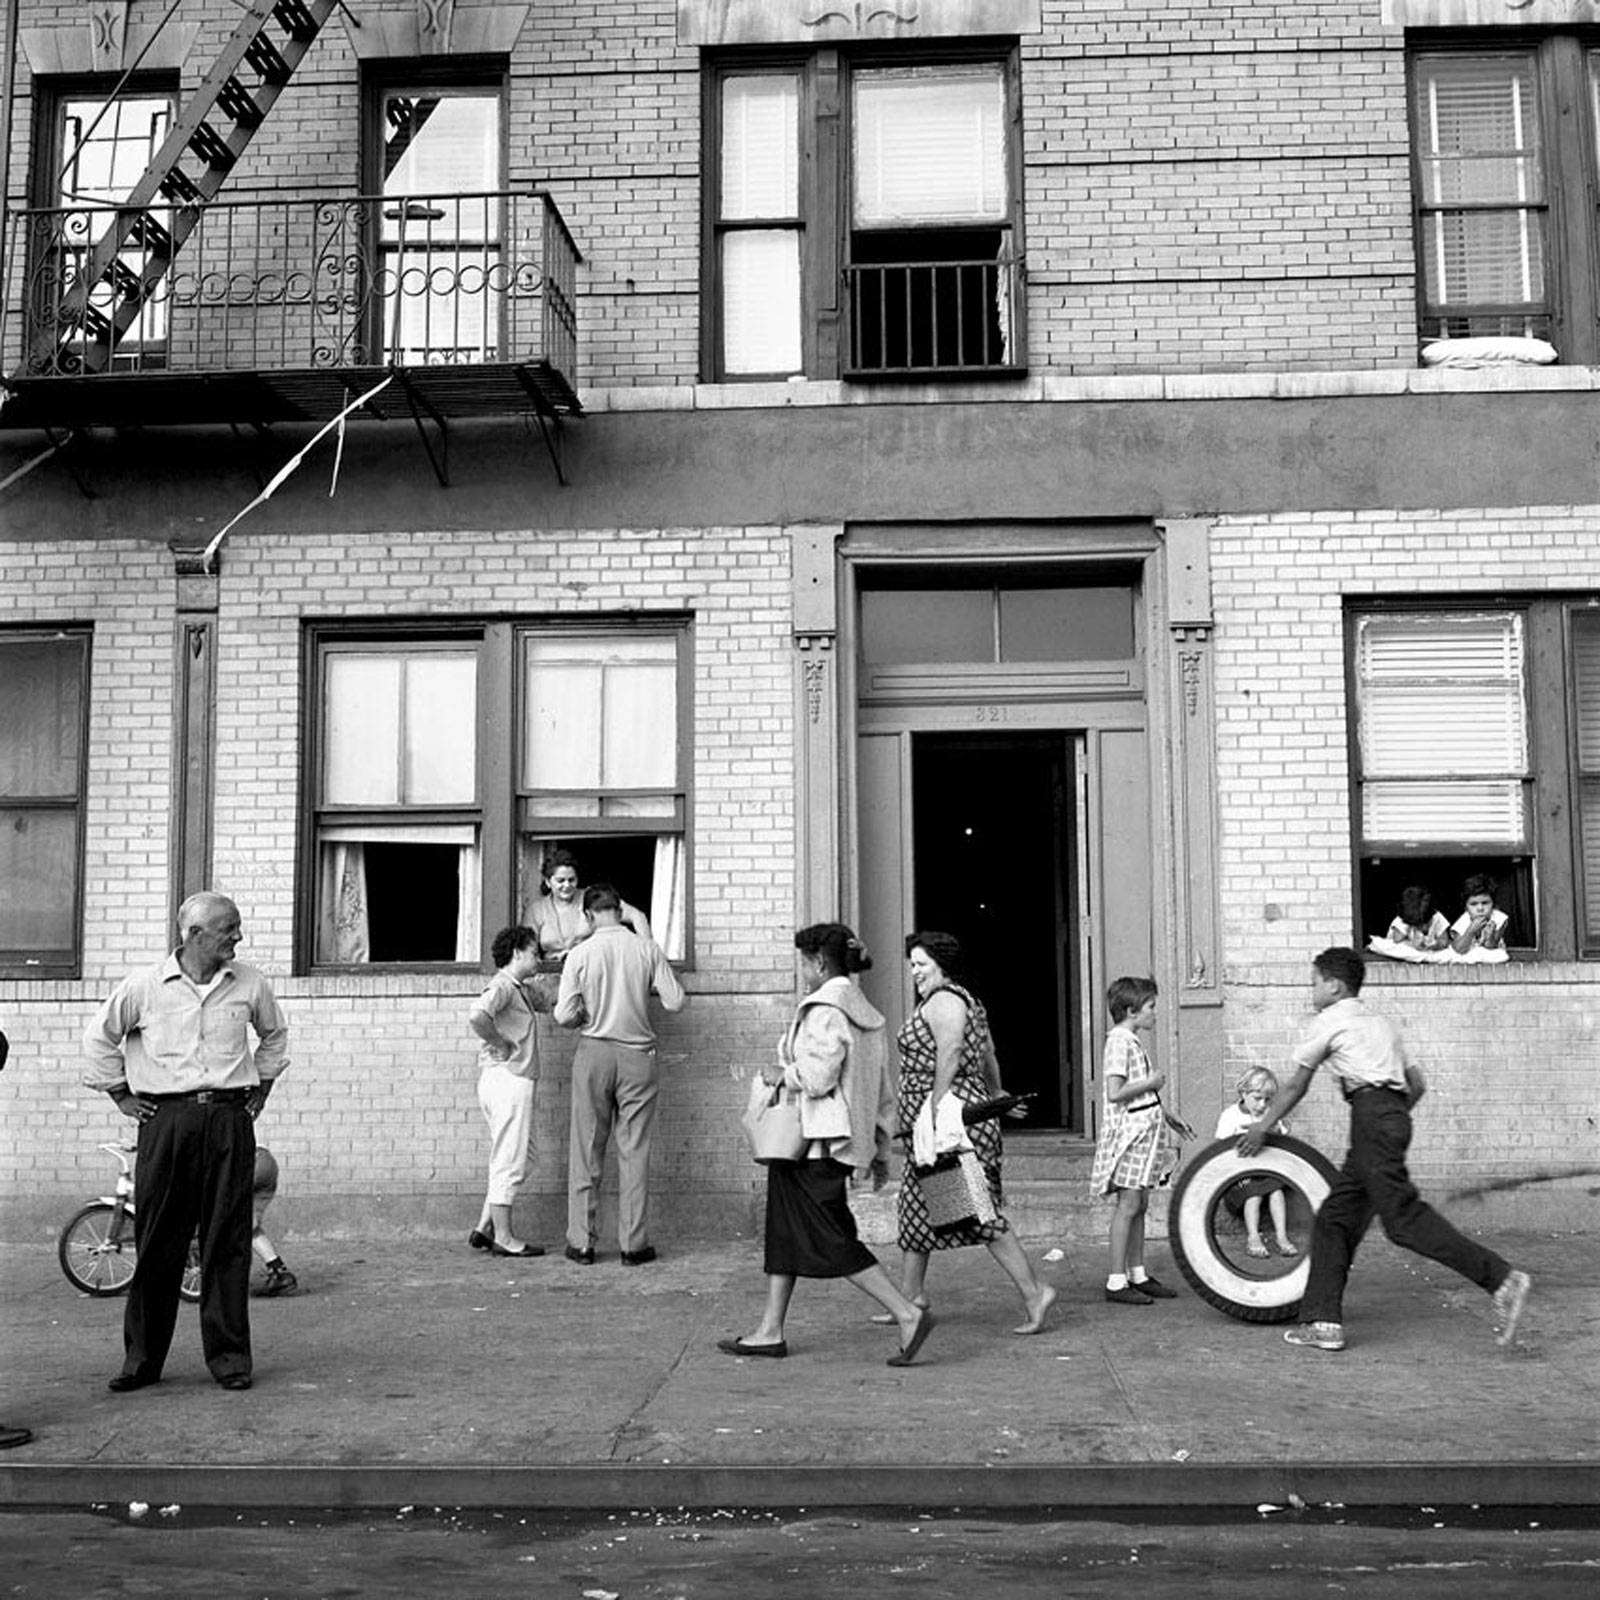 108th St. East, New York, NY, September 28, 1959